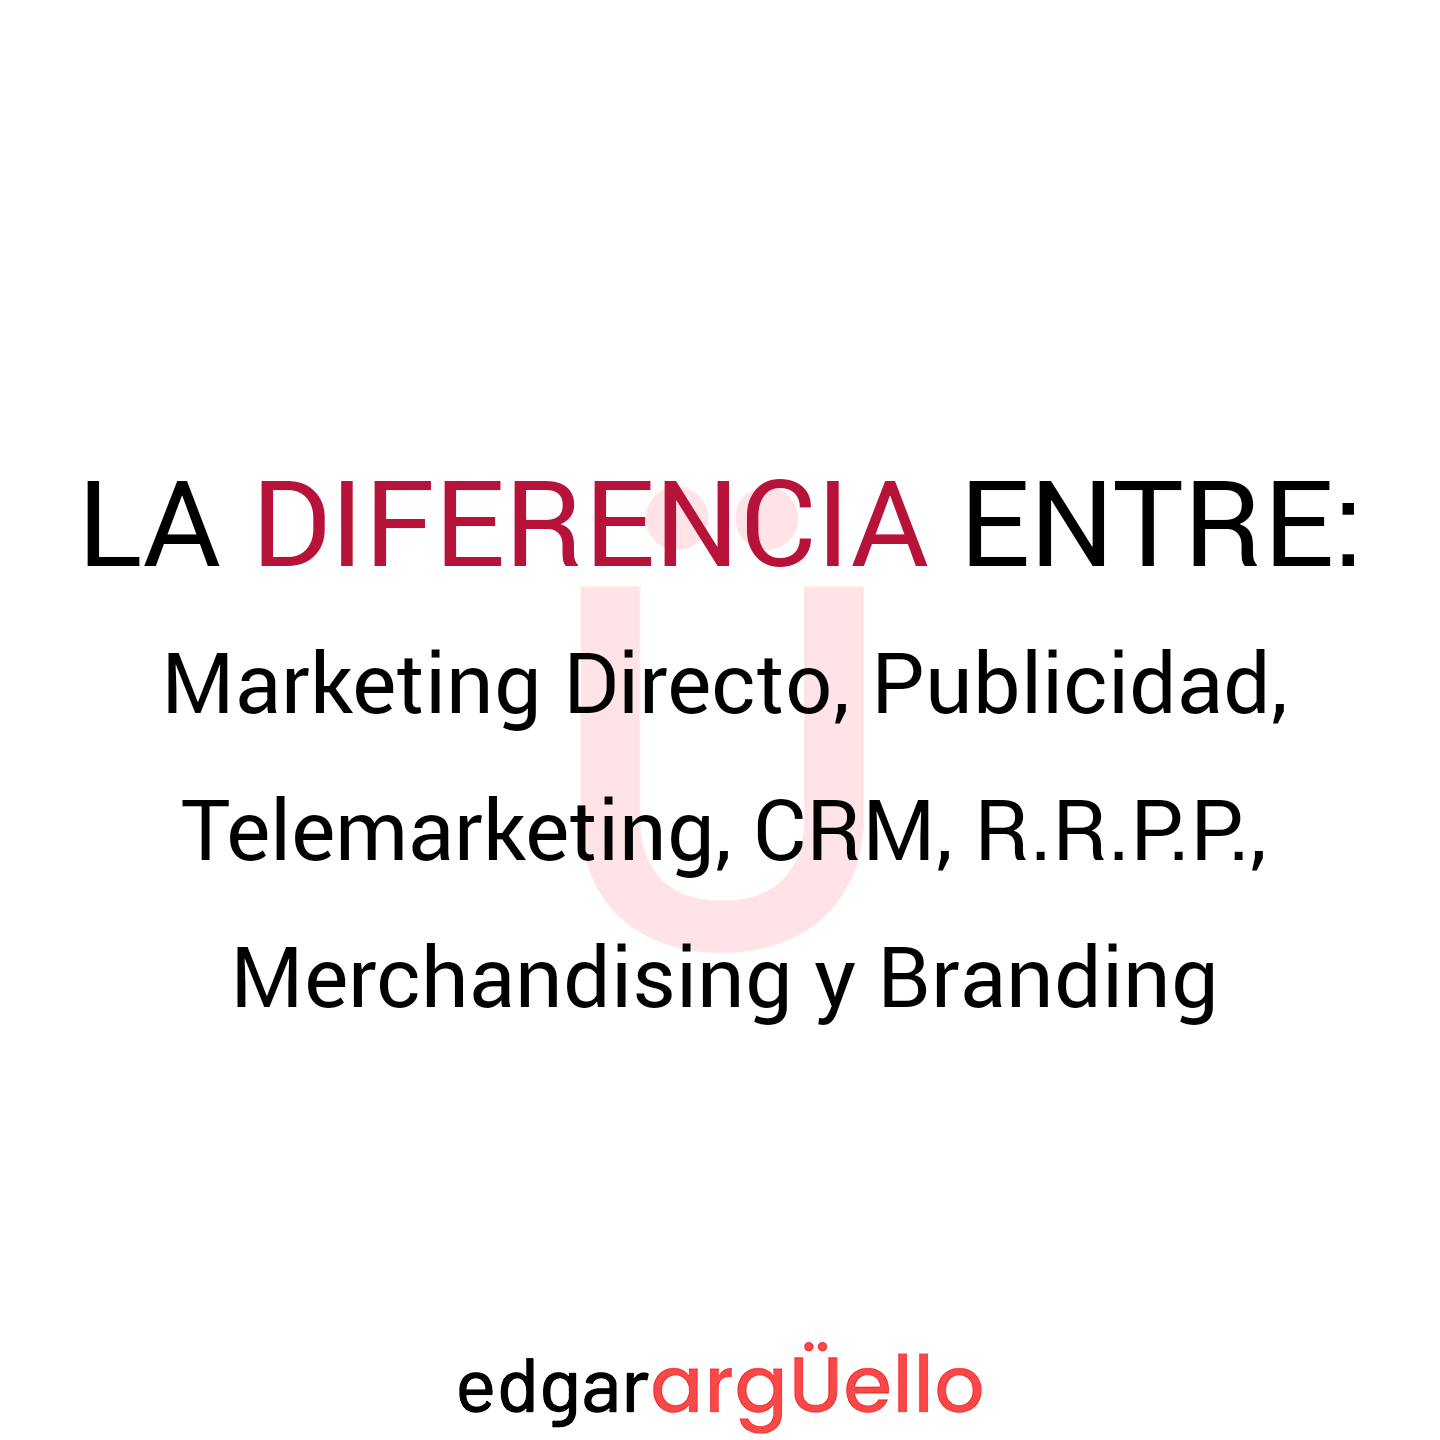 diferencia entre Marketing Directo, Publicidad, Telemarketing, CRM, Relaciones Públicas, Merchandising y Branding